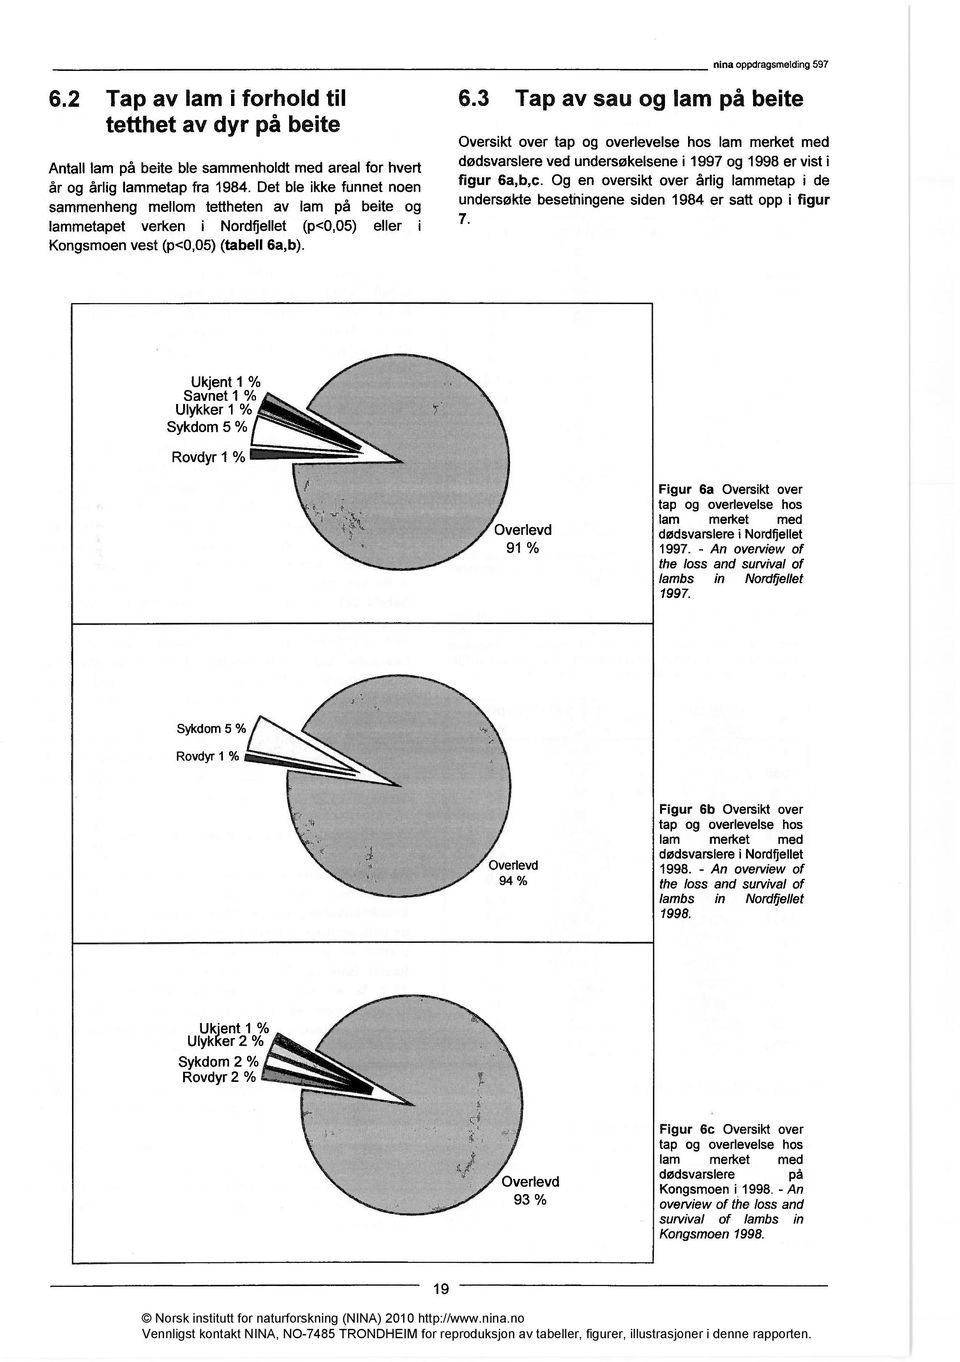 nina oppdragsmelding 597 Oversikt over tap og overlevelse hos lam merket med dødsvarslere ved undersøkelsene i 1997 og 1998 er vist i figur 6a,b,c.